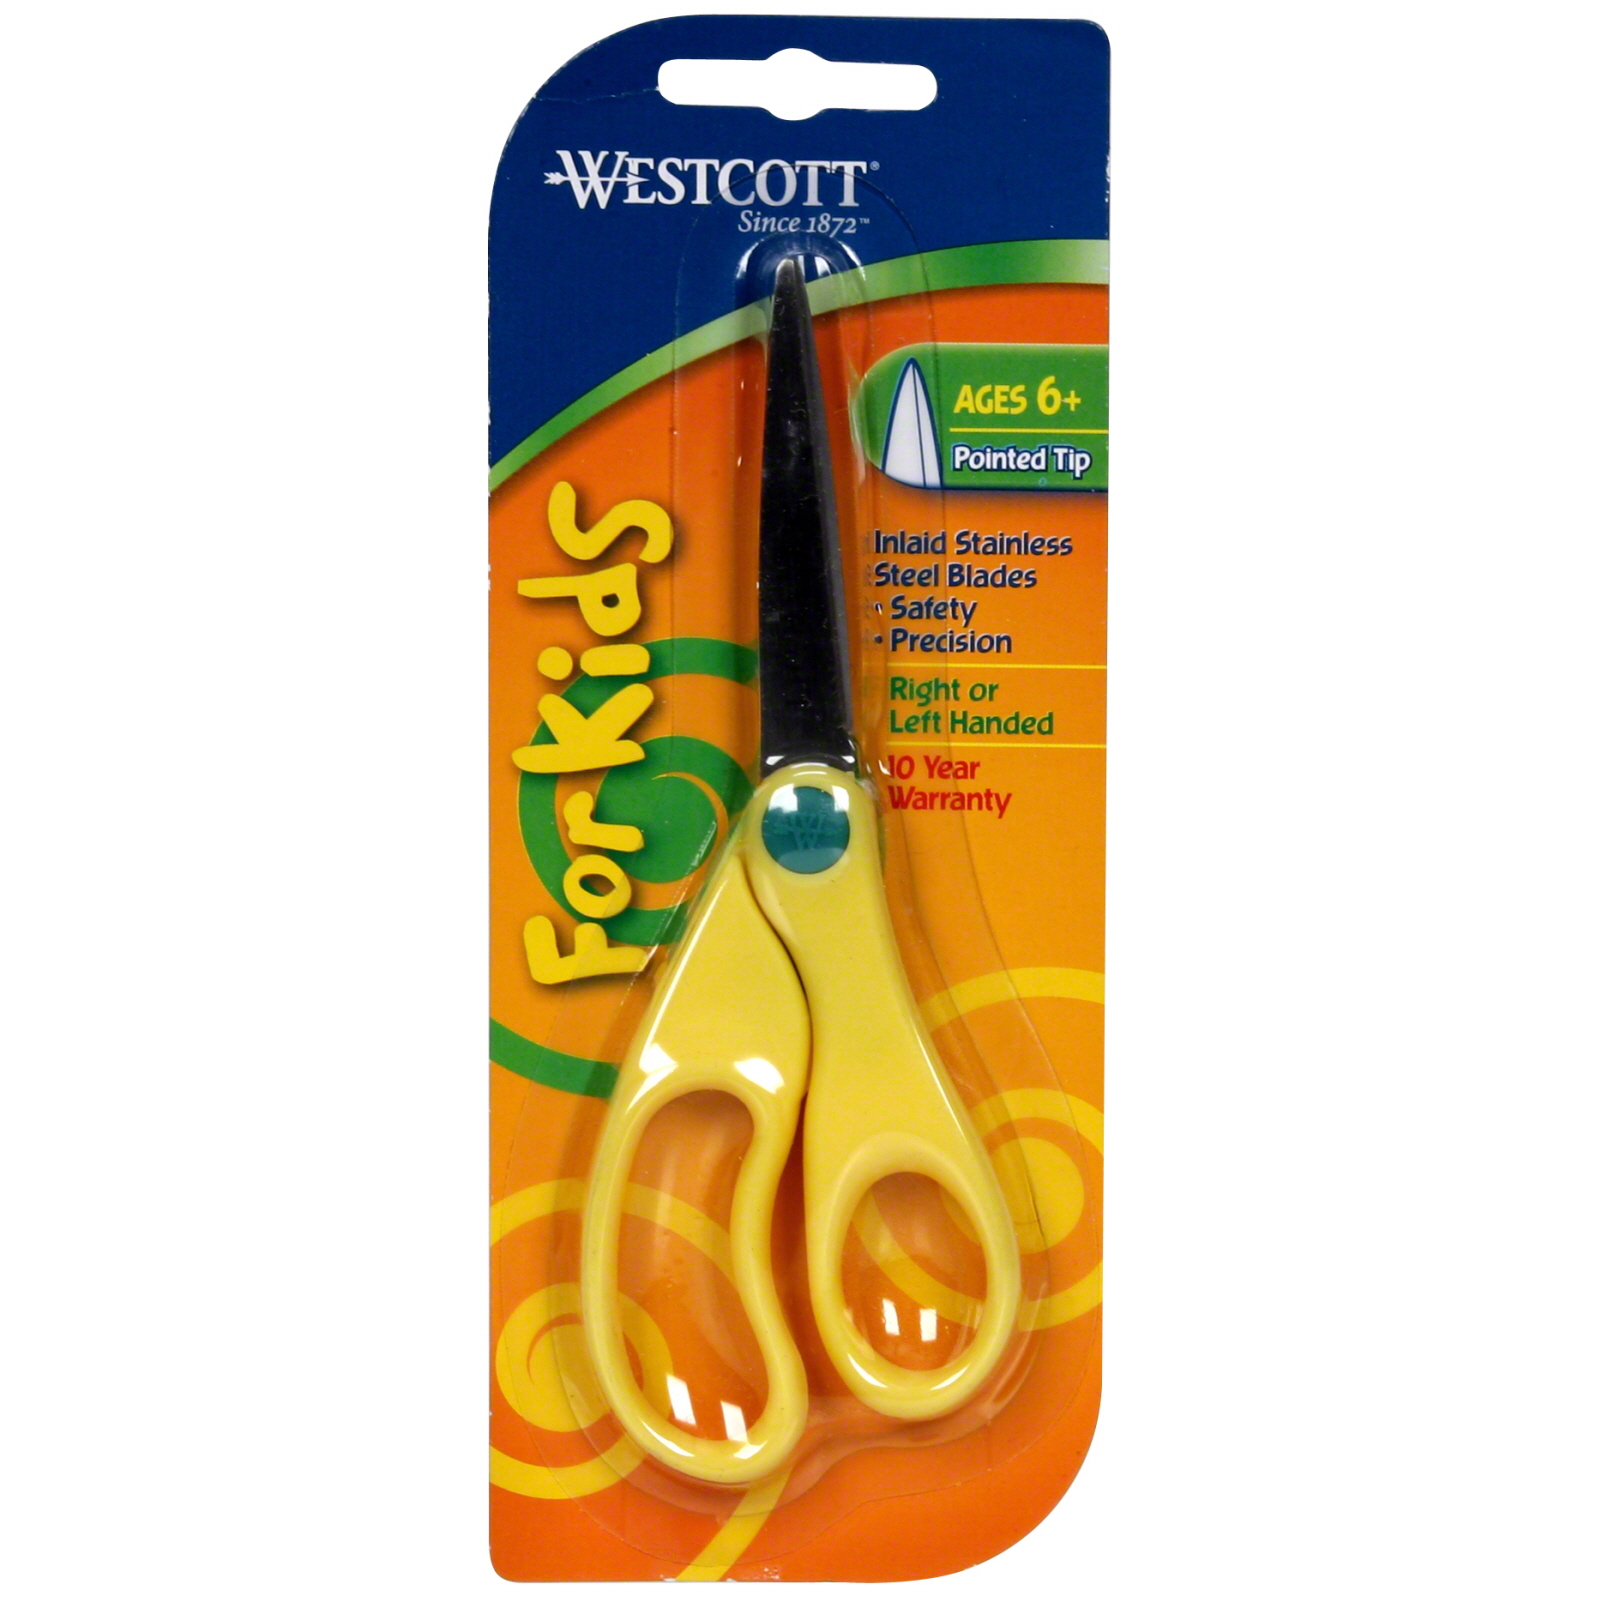 Westcott Scissors, Ages 6+, Pointed Tip, 1 scissor